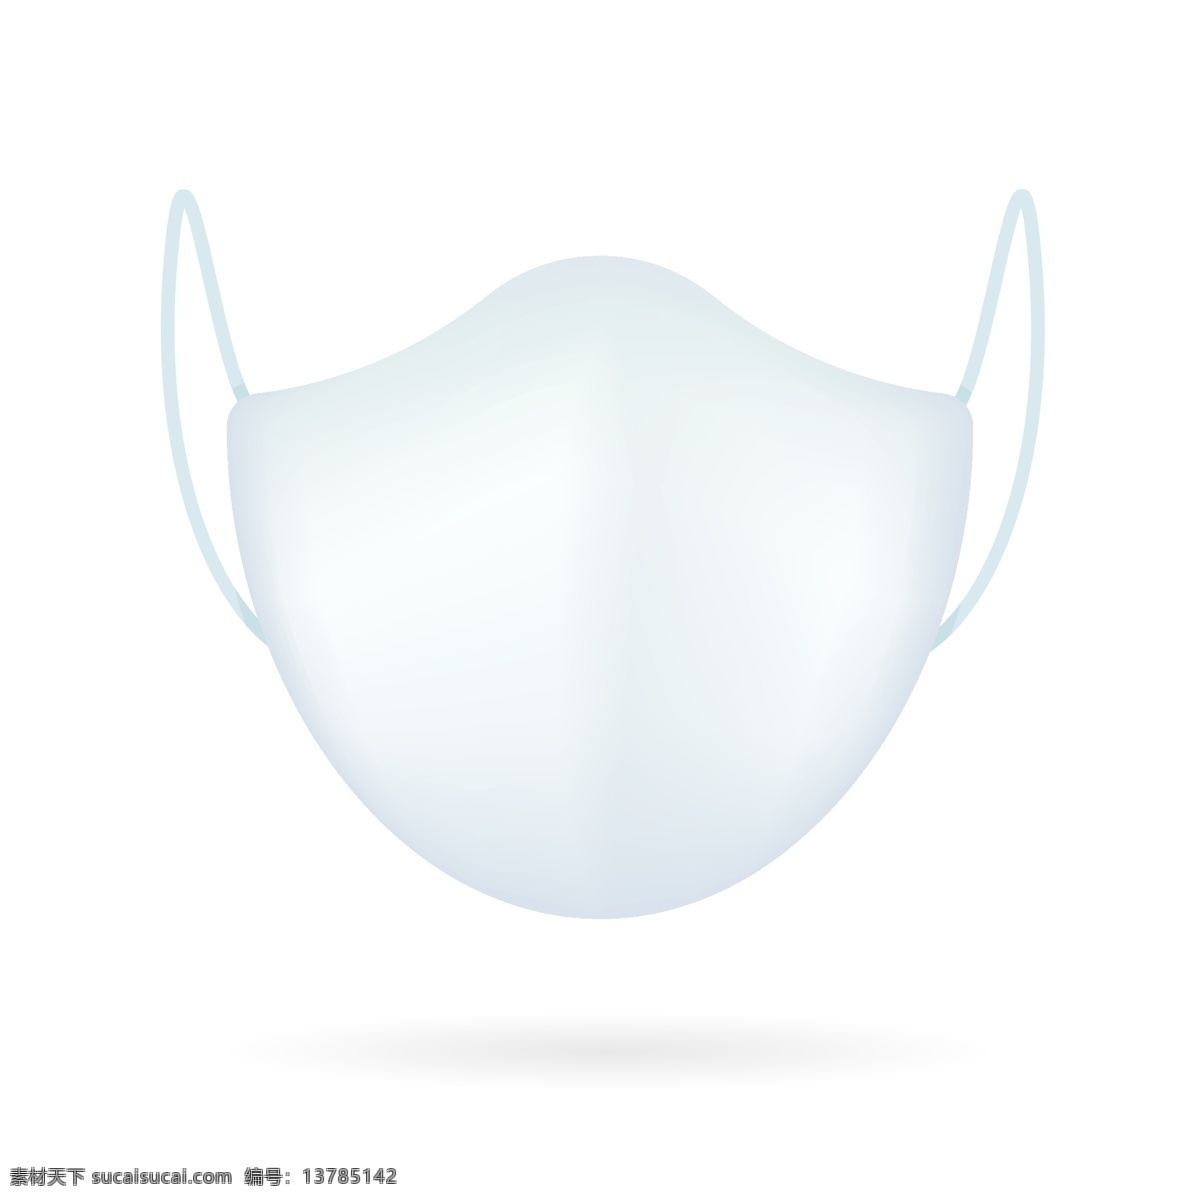 n95 kn95 一次性口罩 口罩矢量图 口罩线条图 包装 医疗卫生保健